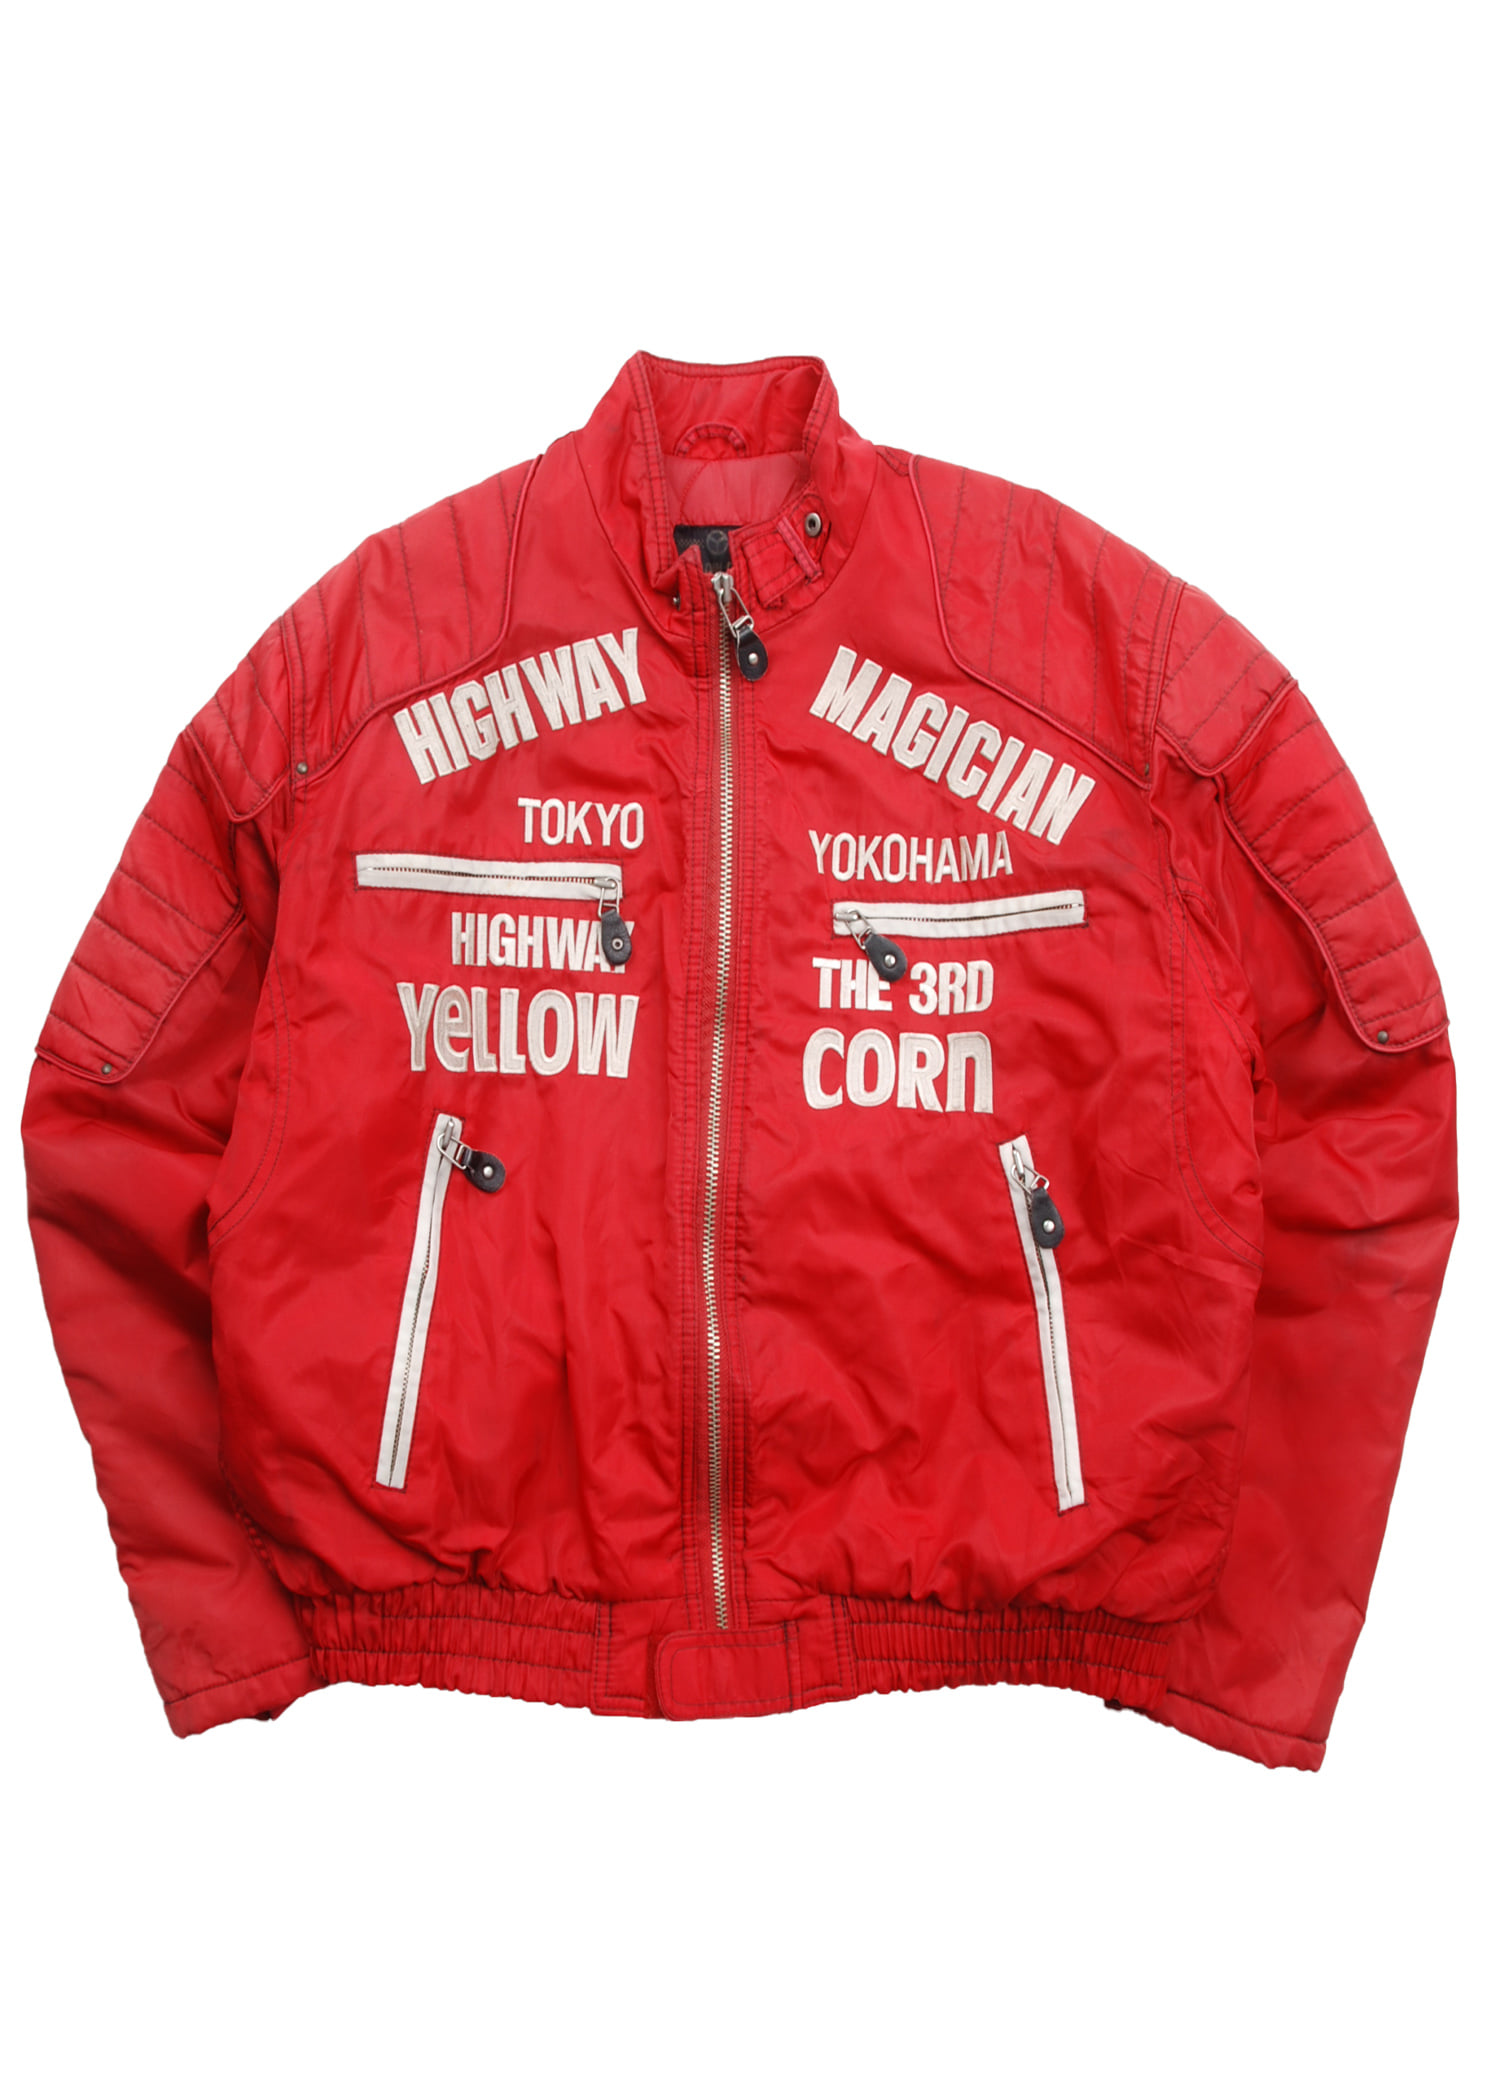 YELLOW CORN racing jacket